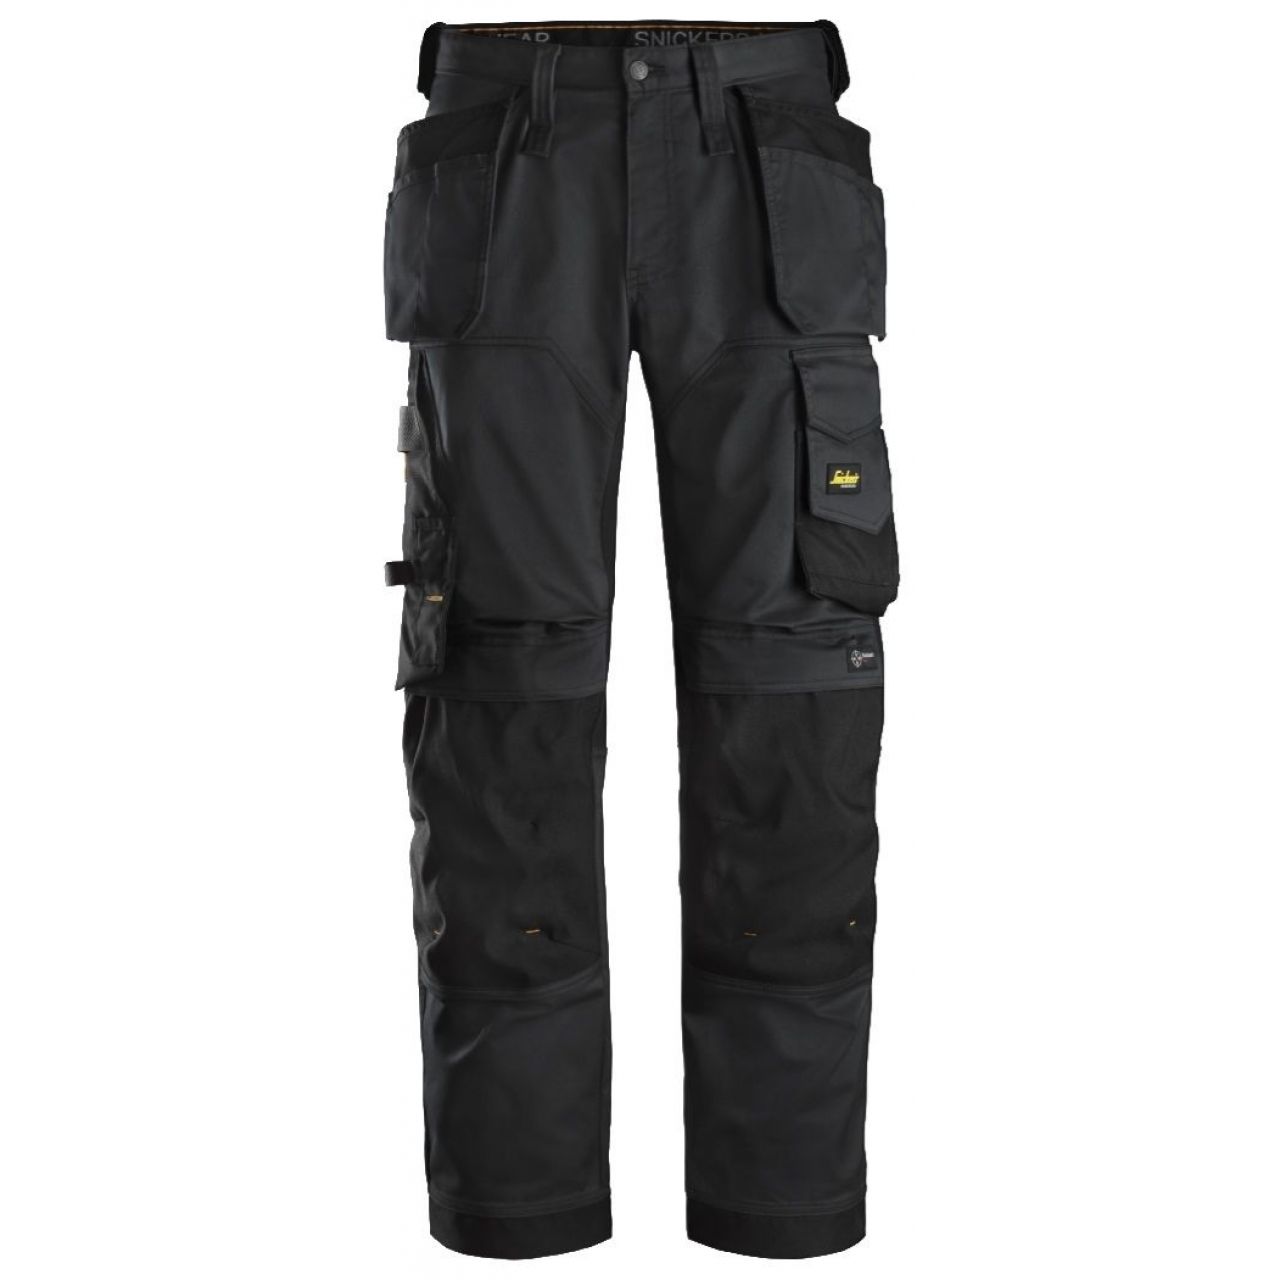 Pantalon elastico ajuste holgado AllroundWork bolsillos flotantes negro talla 088